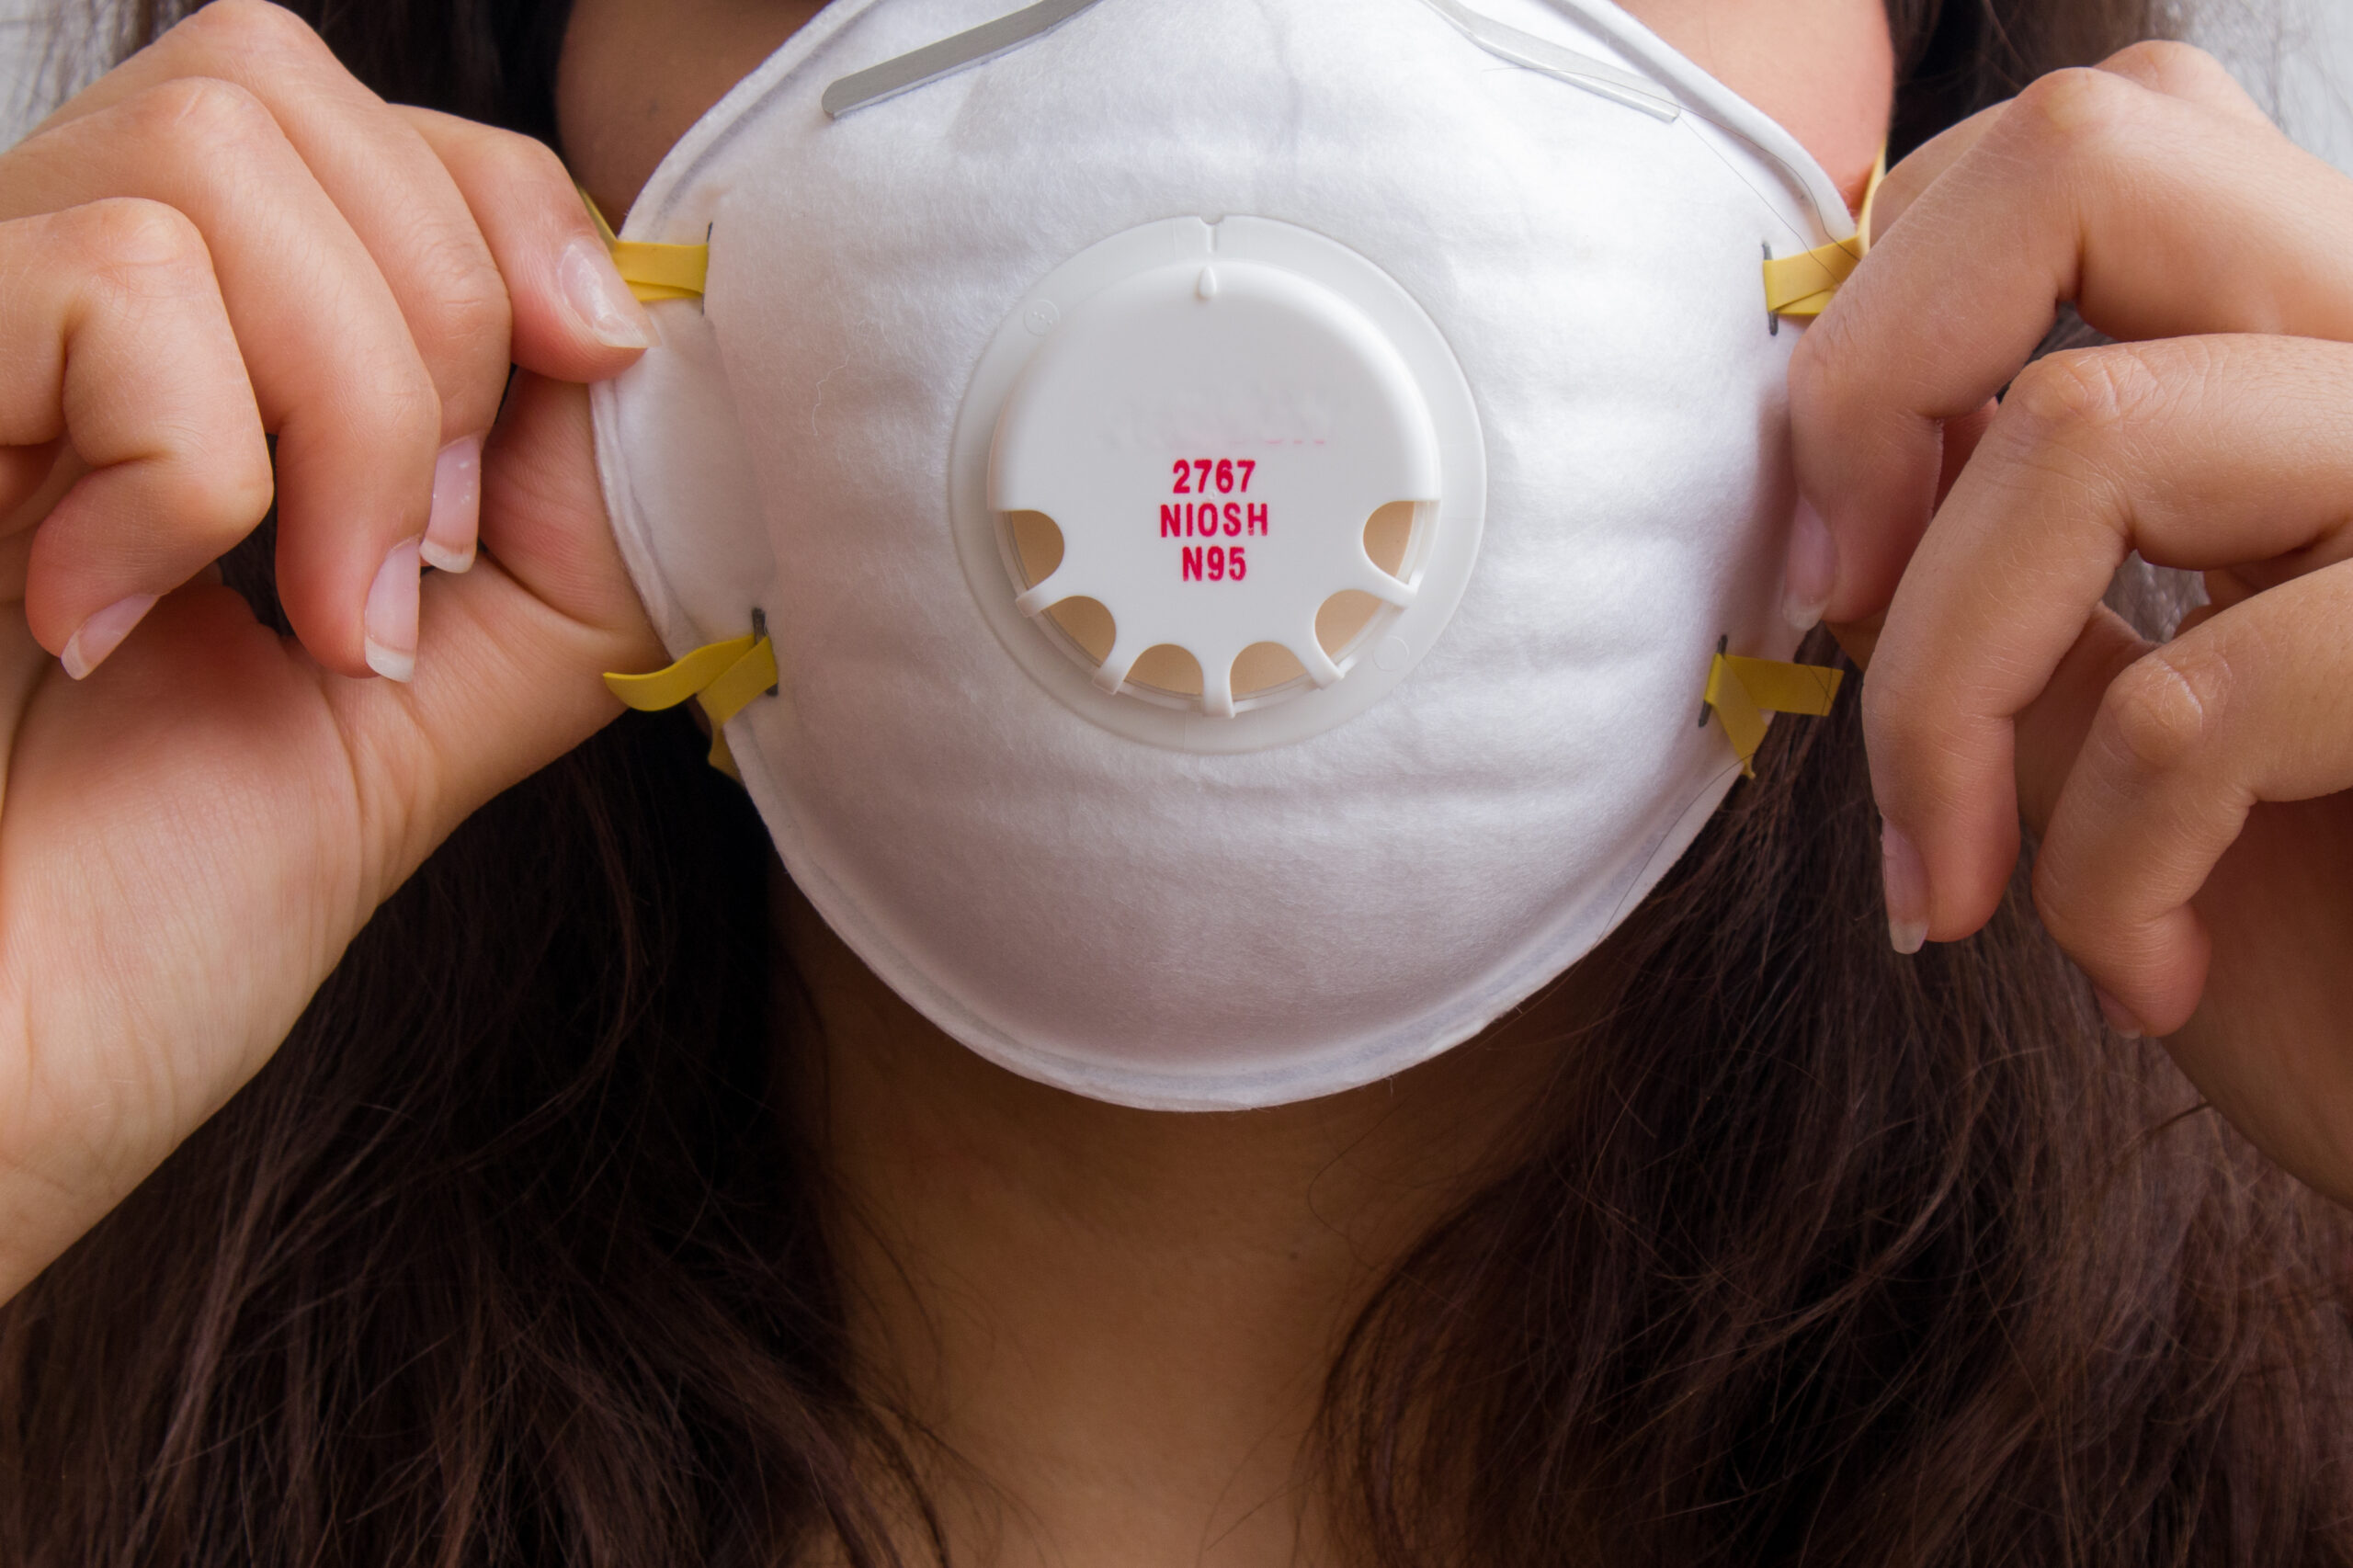 Производители масок считают их смертельно опасными для врачей